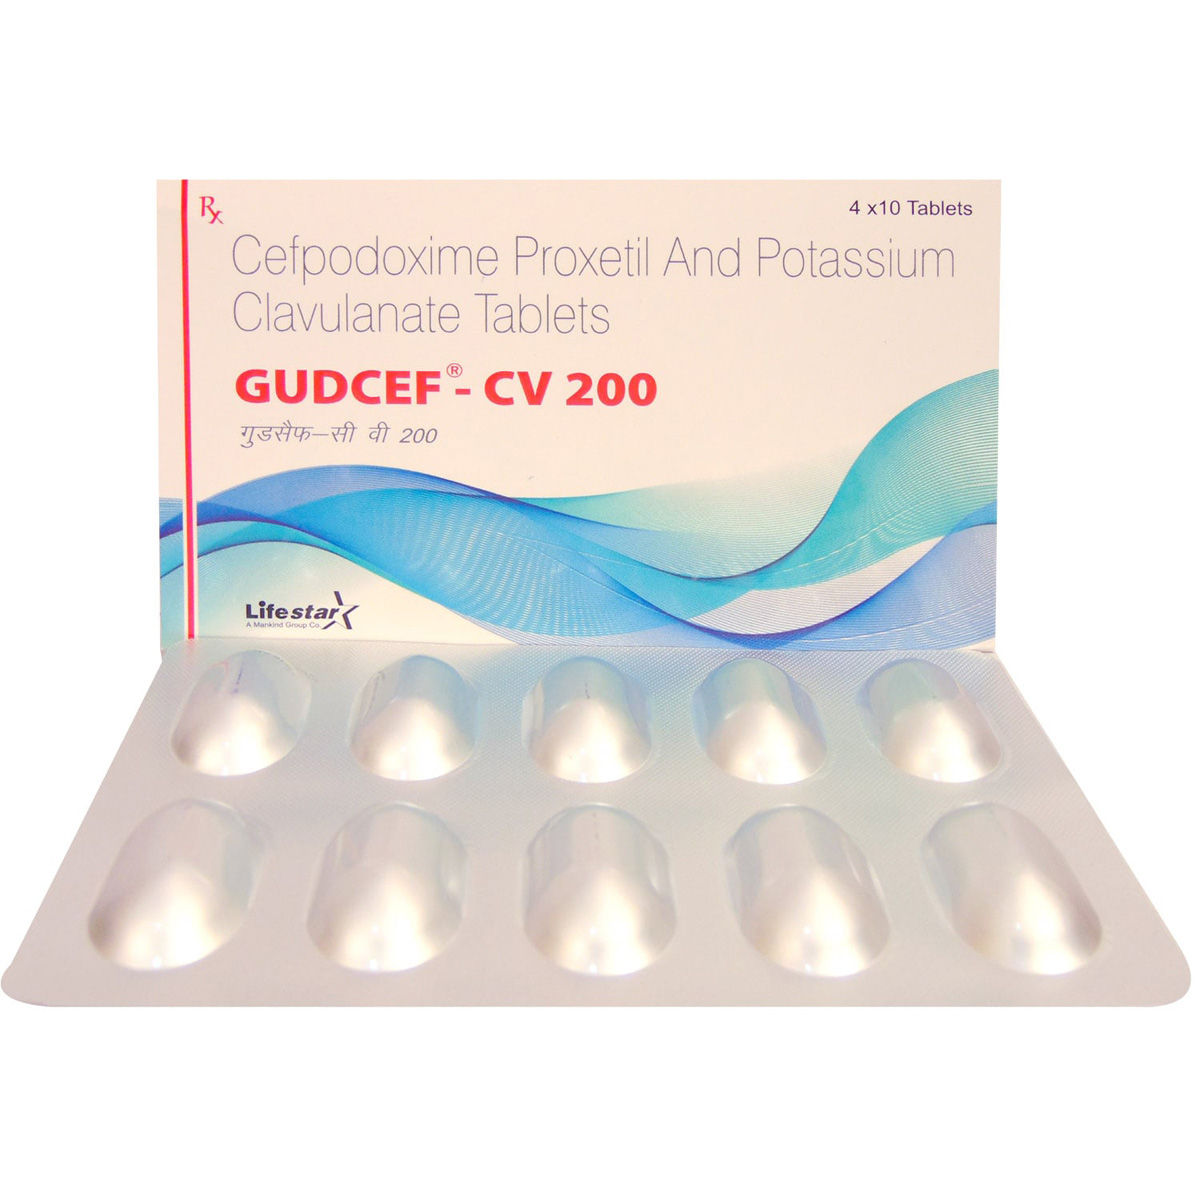 Gudcef-CV 200 Tablet 10's, Pack of 10 TABLETS